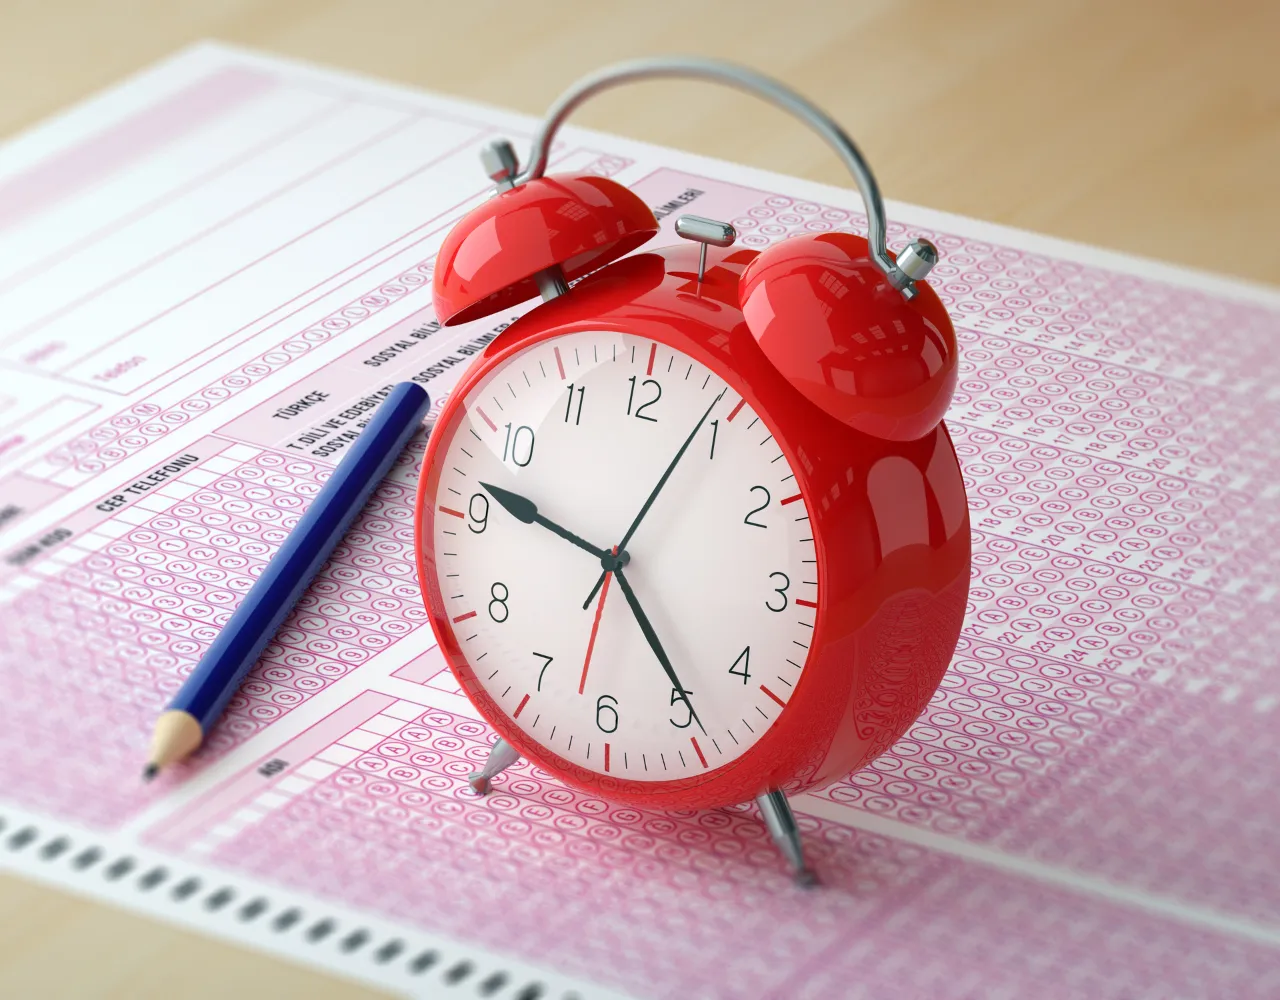 Despertador analógico vermelho em um planejador diário com um lápis azul, enfatizando o gerenciamento e a programação do tempo.